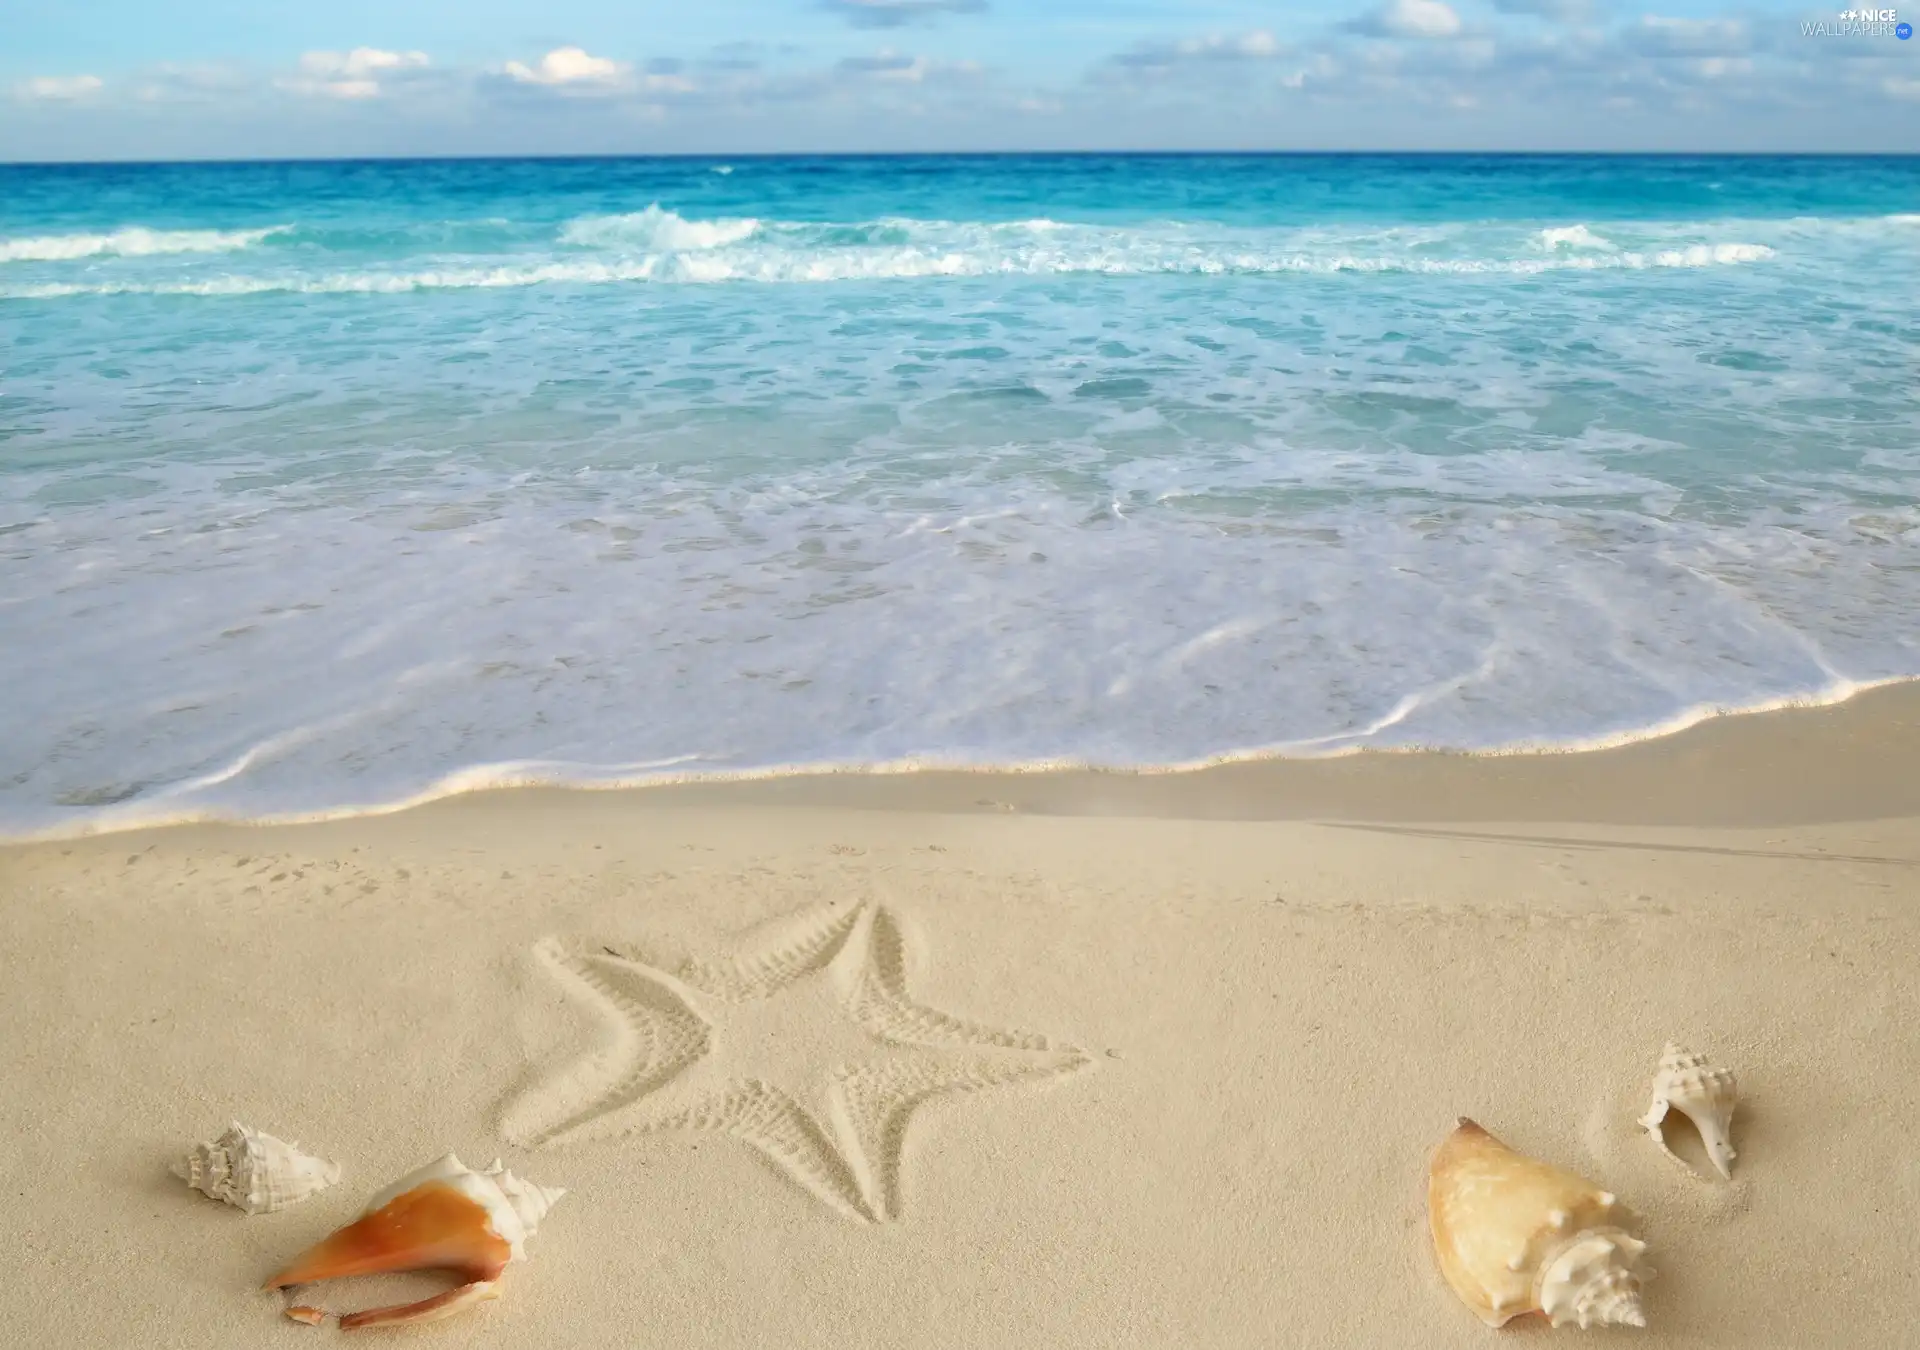 Beaches, Shells, starfish, Sand